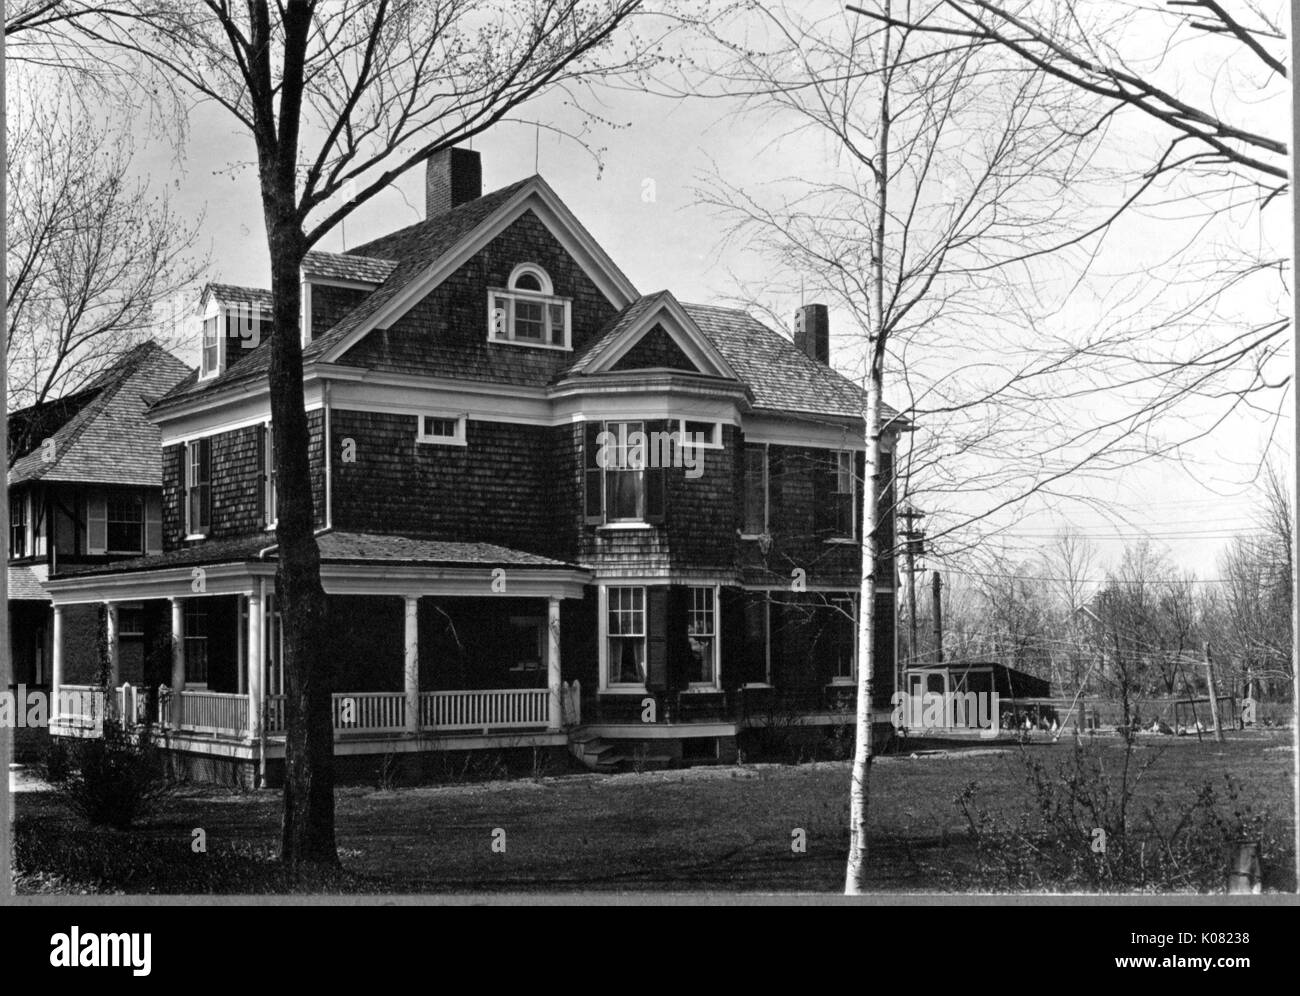 Ein großes Einfamilienhaus mit einer großen Veranda, Dachgauben, Cedar Schindeln, Schornsteine, und großen Hof mit Gebüsch in Bäumen in Baltimore, Maryland, 1910. Stockfoto